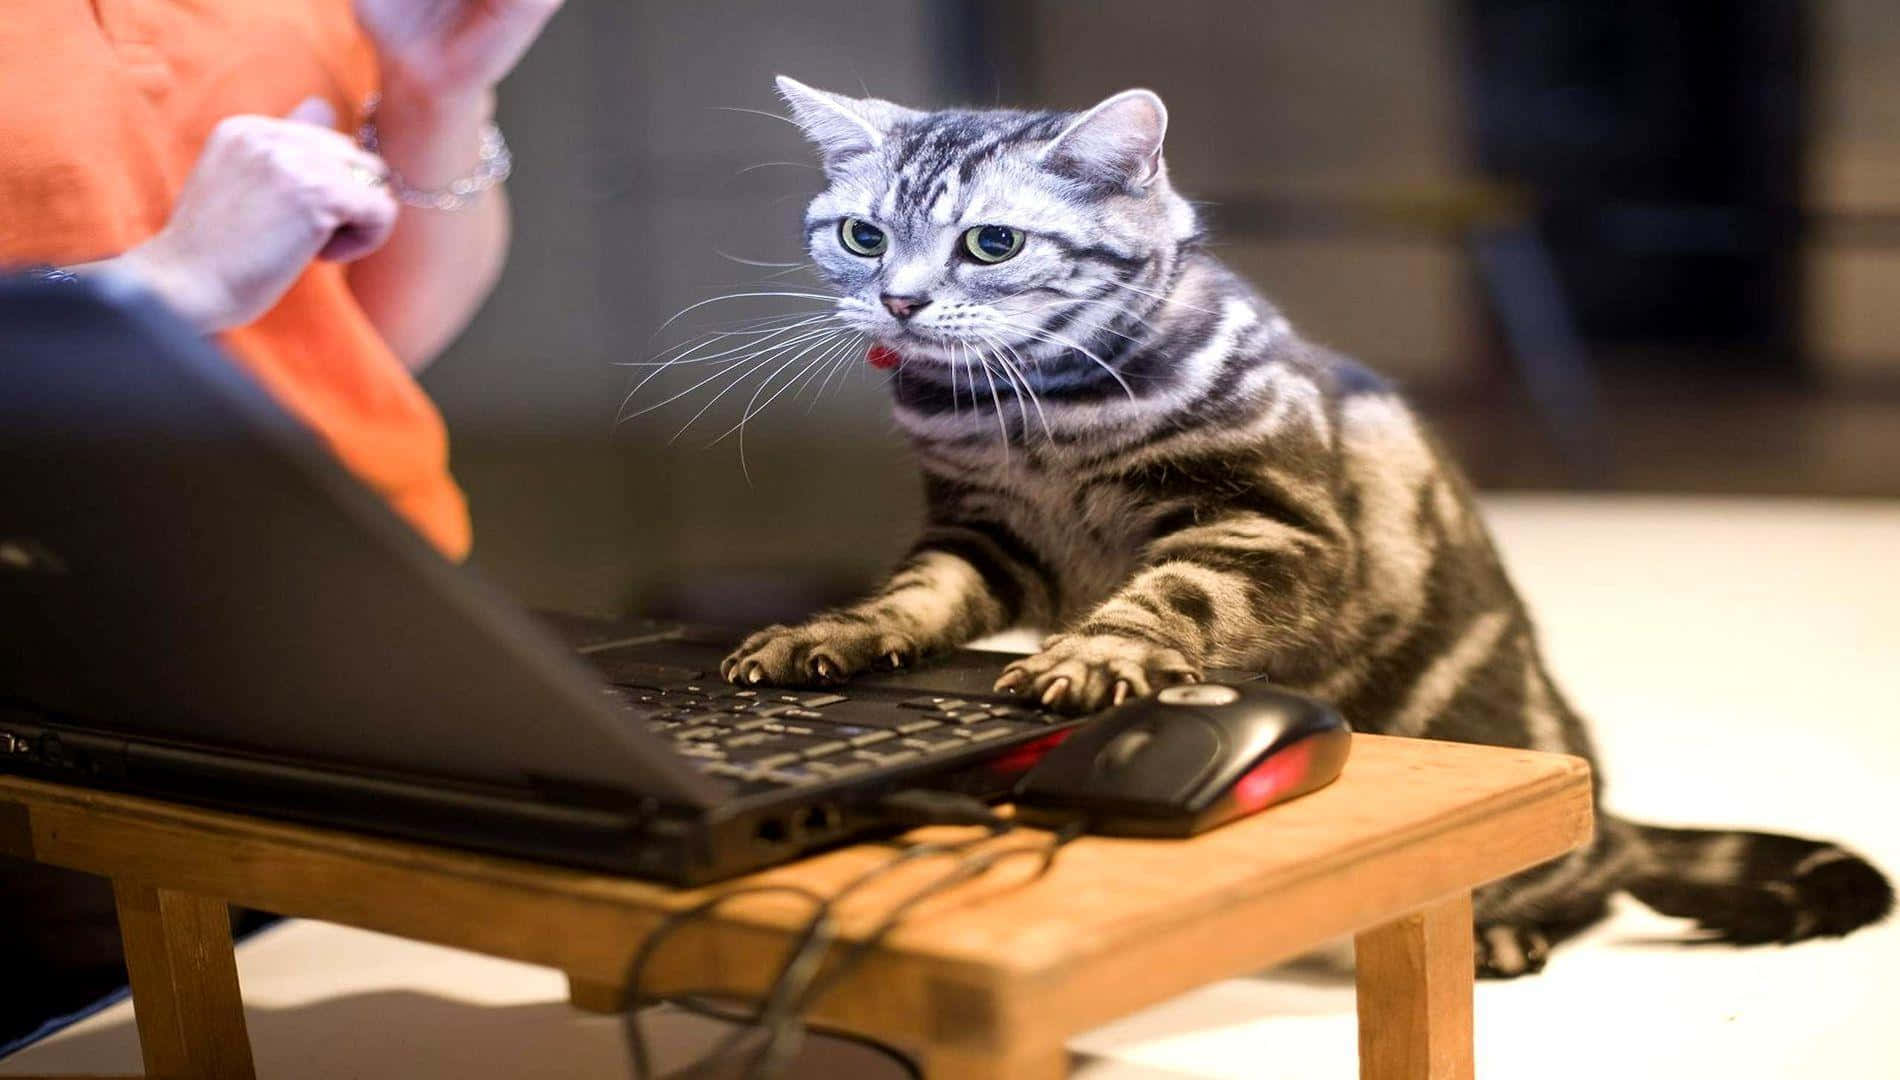 Imagende Un Extraño Gato Negro Trabajando En Una Computadora